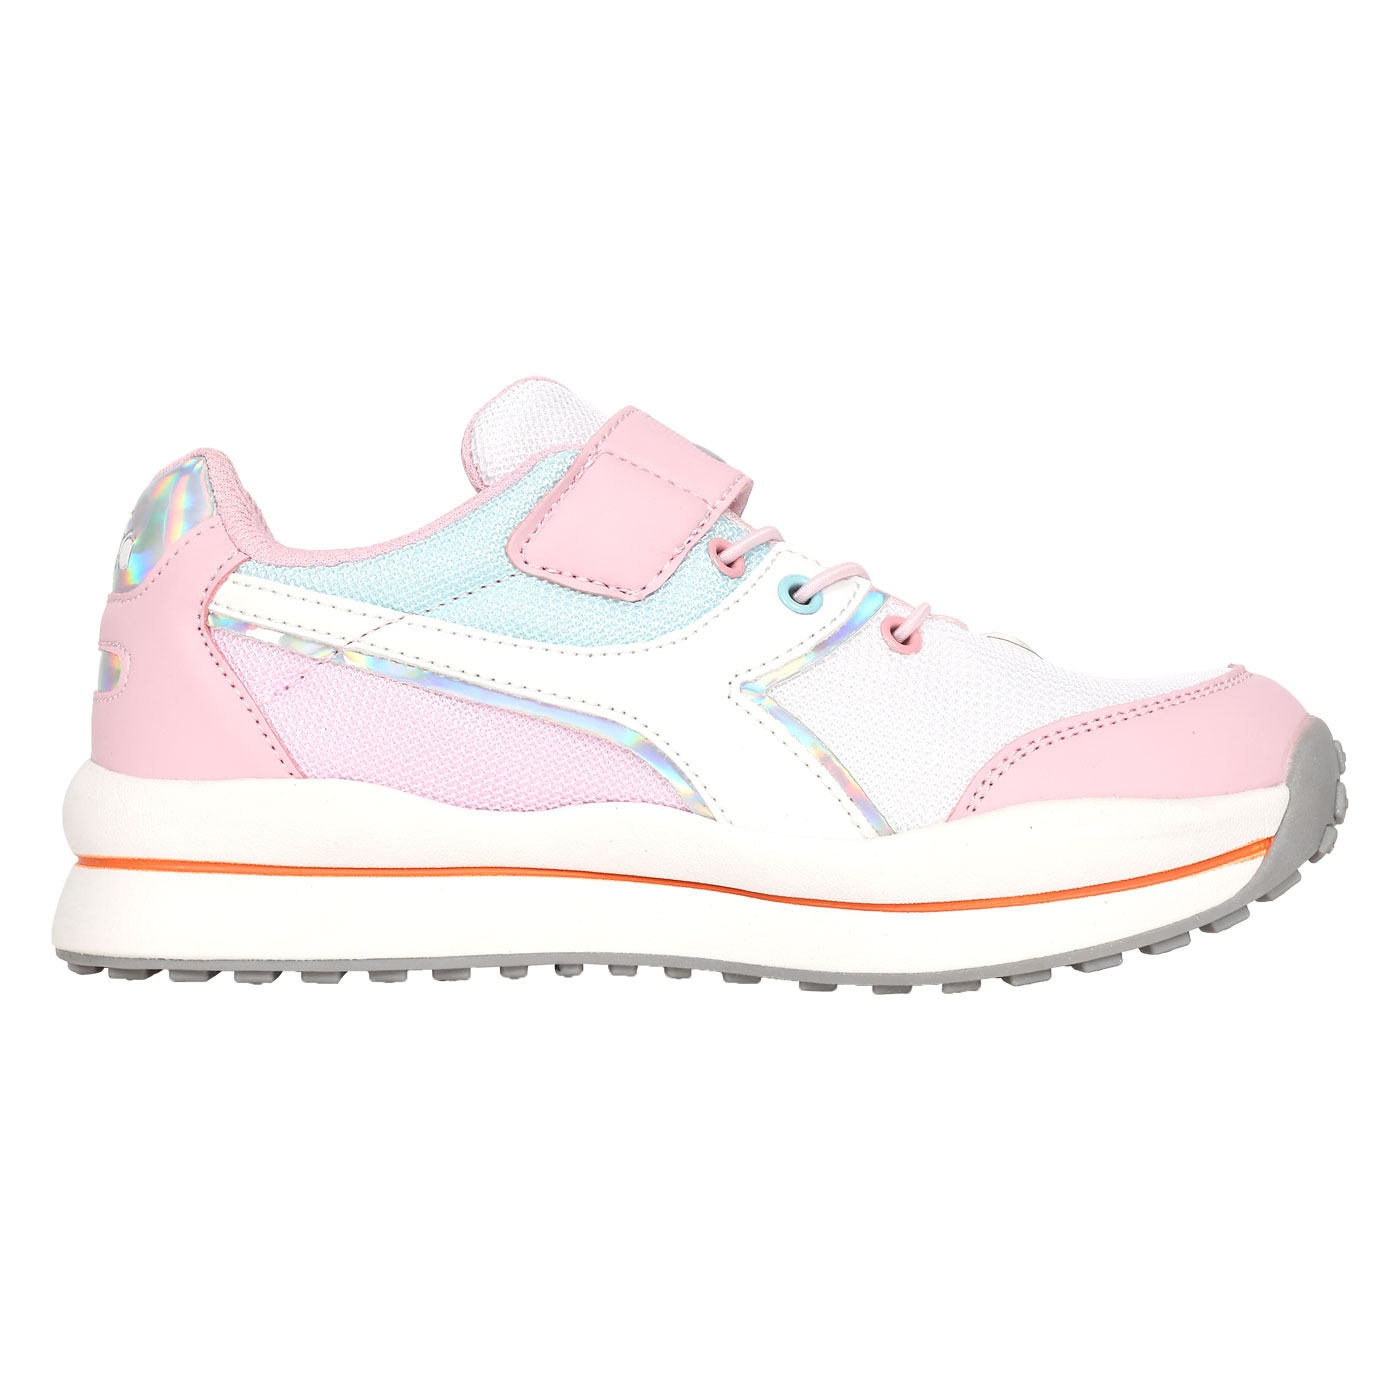 DIADORA 大童生活時尚運動鞋-超寬楦  DA11116 - 白粉紅銀